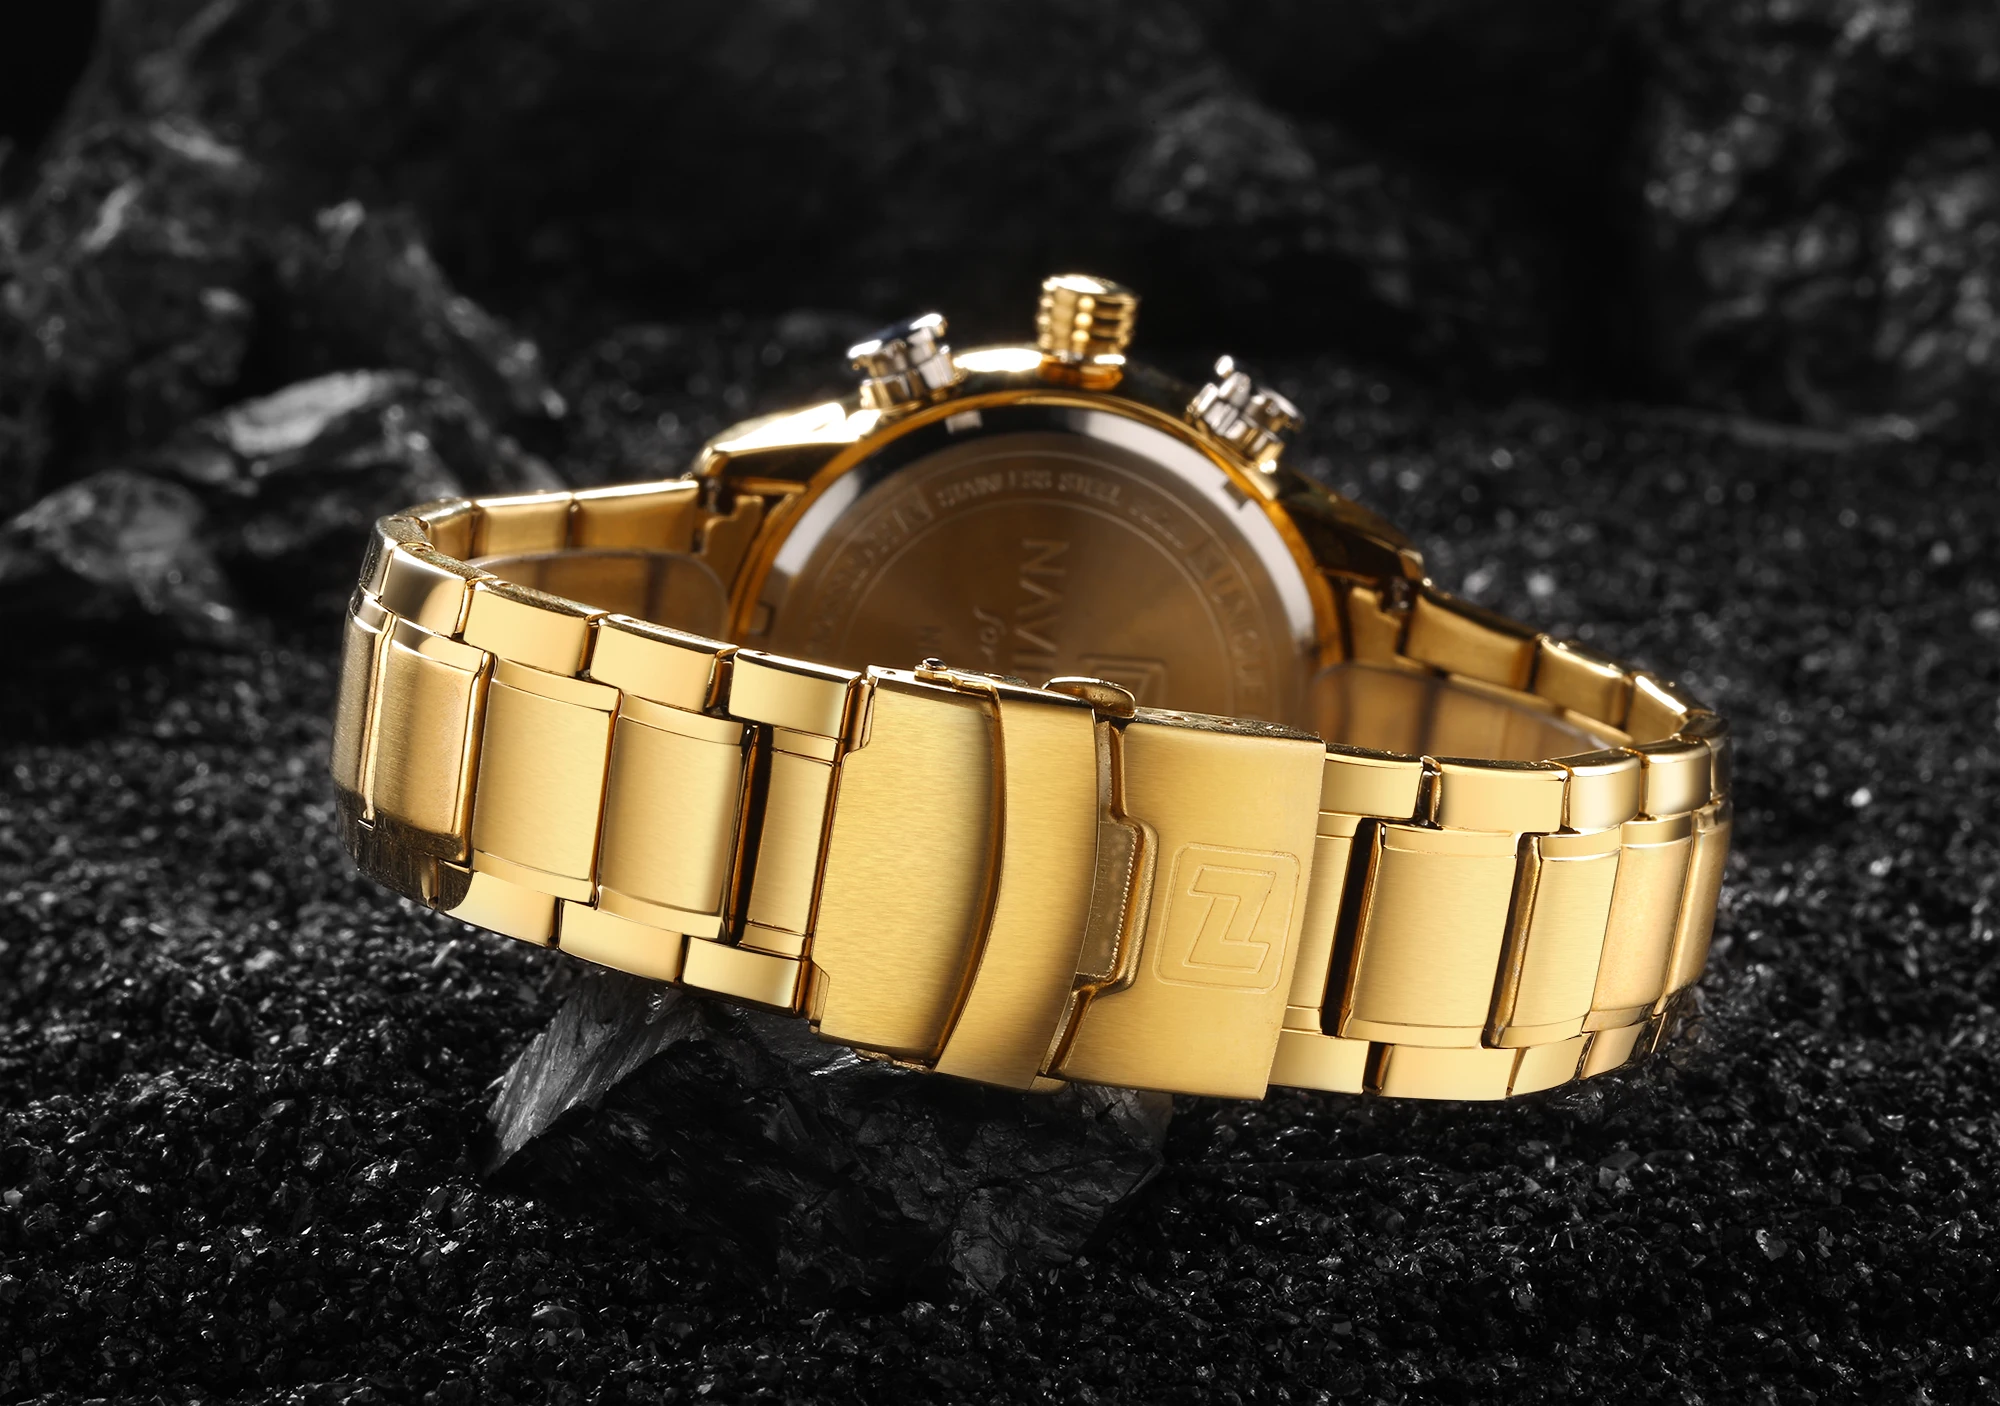 NAVIFORCE Роскошные Кварцевые часы от ведущего бренда, мужские часы с двойным циферблатом и золотым стальным ремешком, Многофункциональные цифровые аналоговые часы с календарем